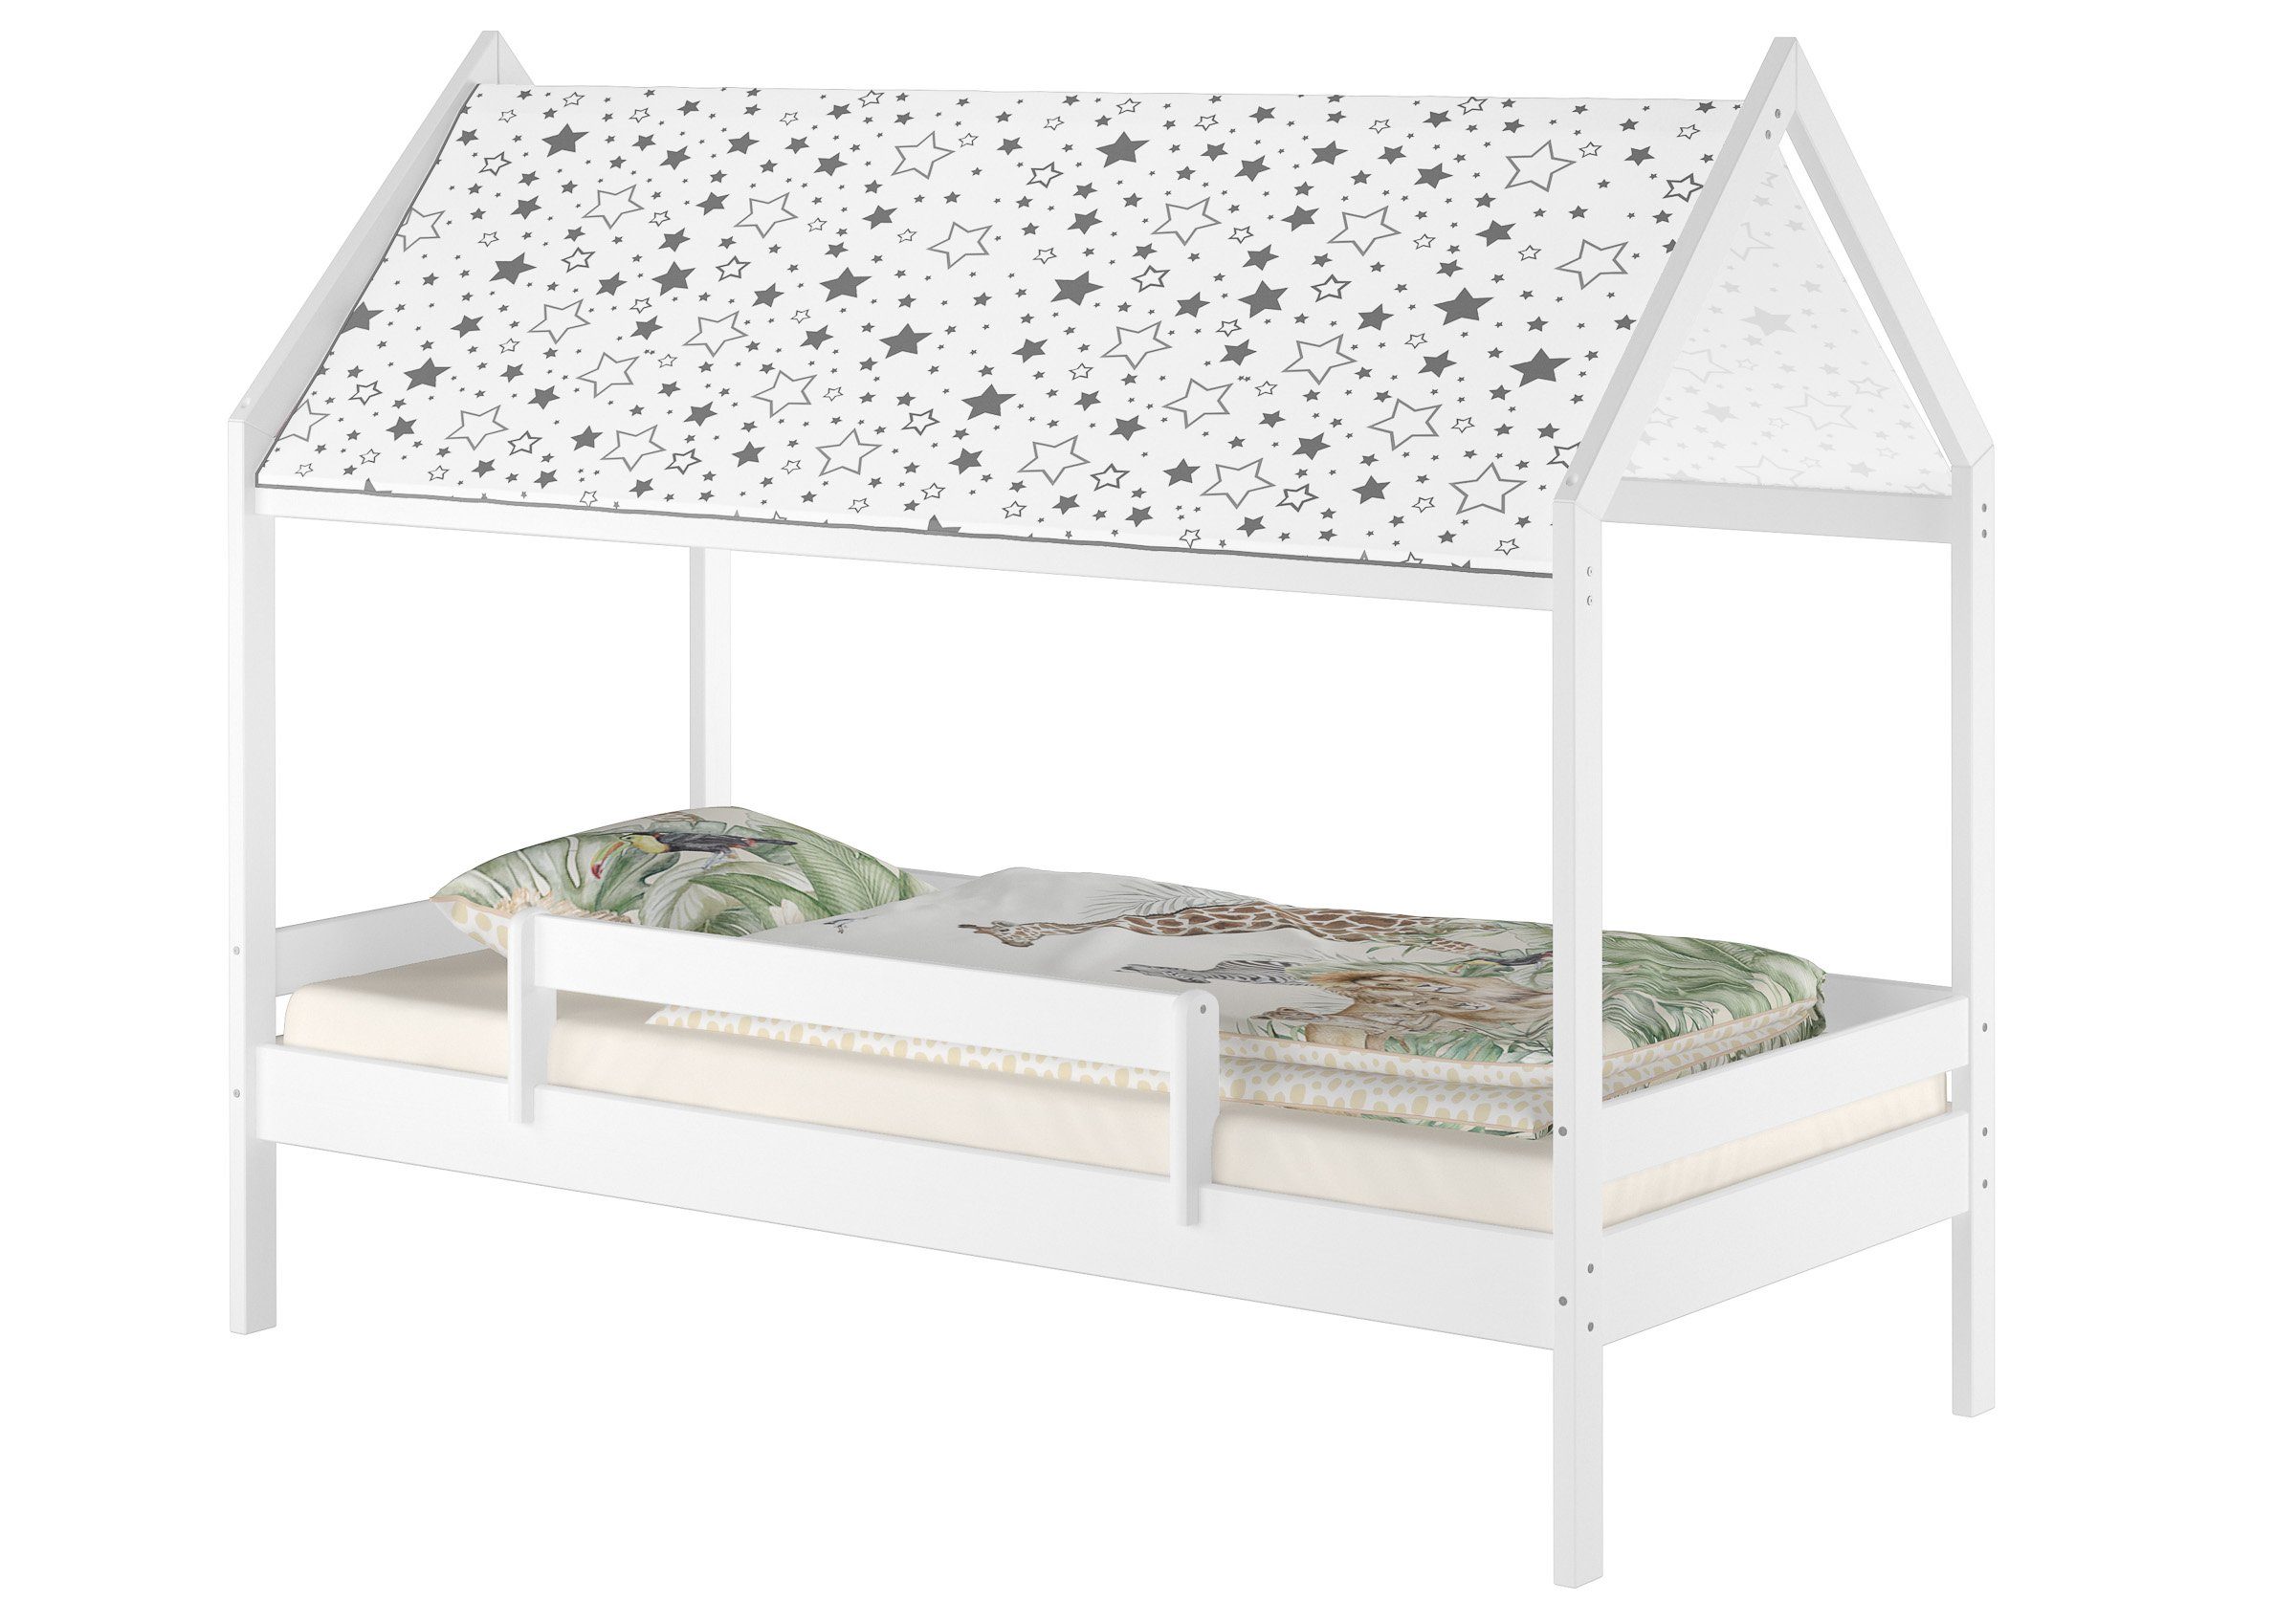 ERST-HOLZ Hausbett Bett mit Himmel mit Kieferwaschweiß Weißes Fallschutz und Dach, Himmelbett